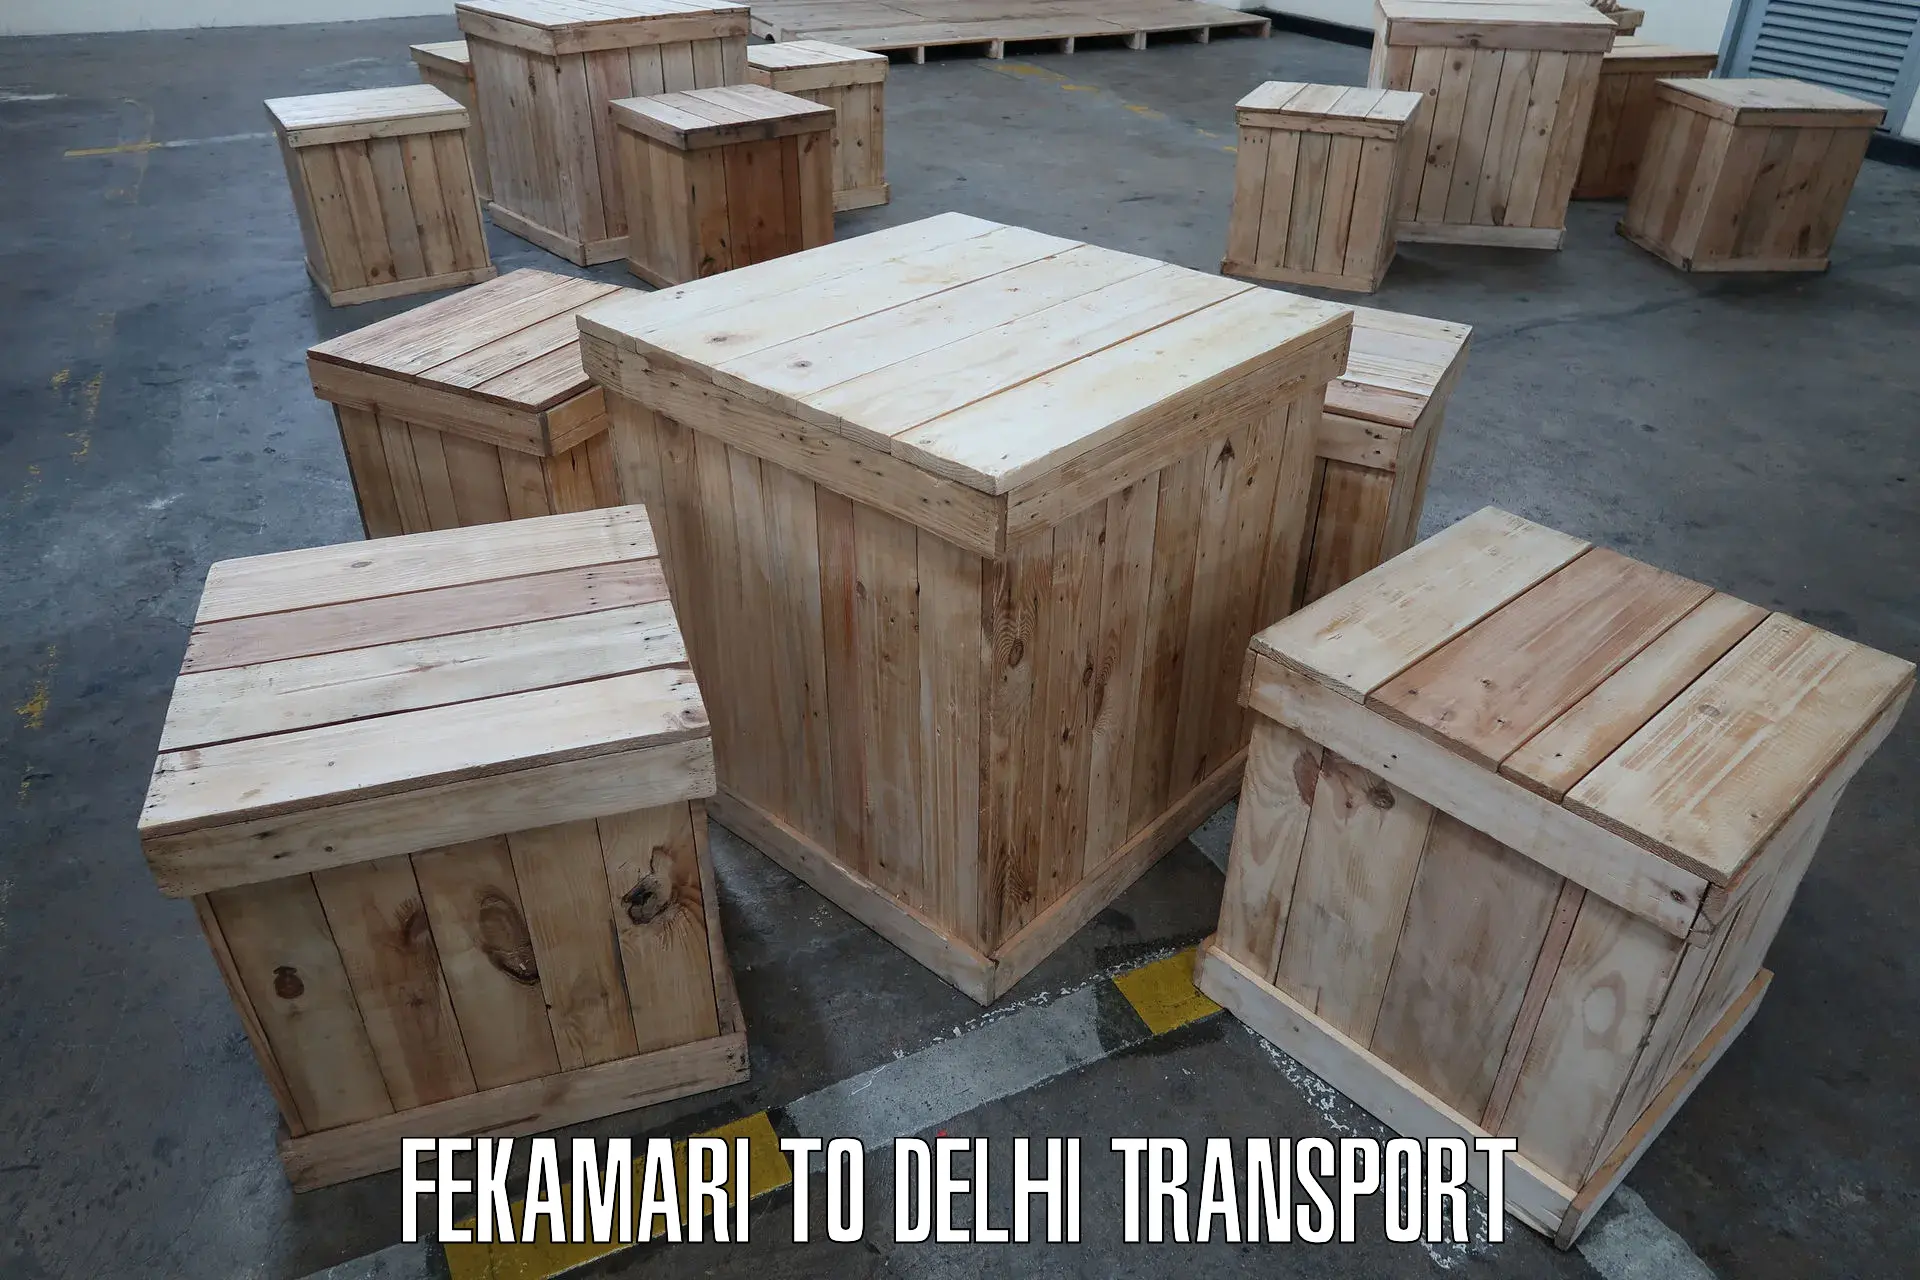 Road transport services Fekamari to East Delhi